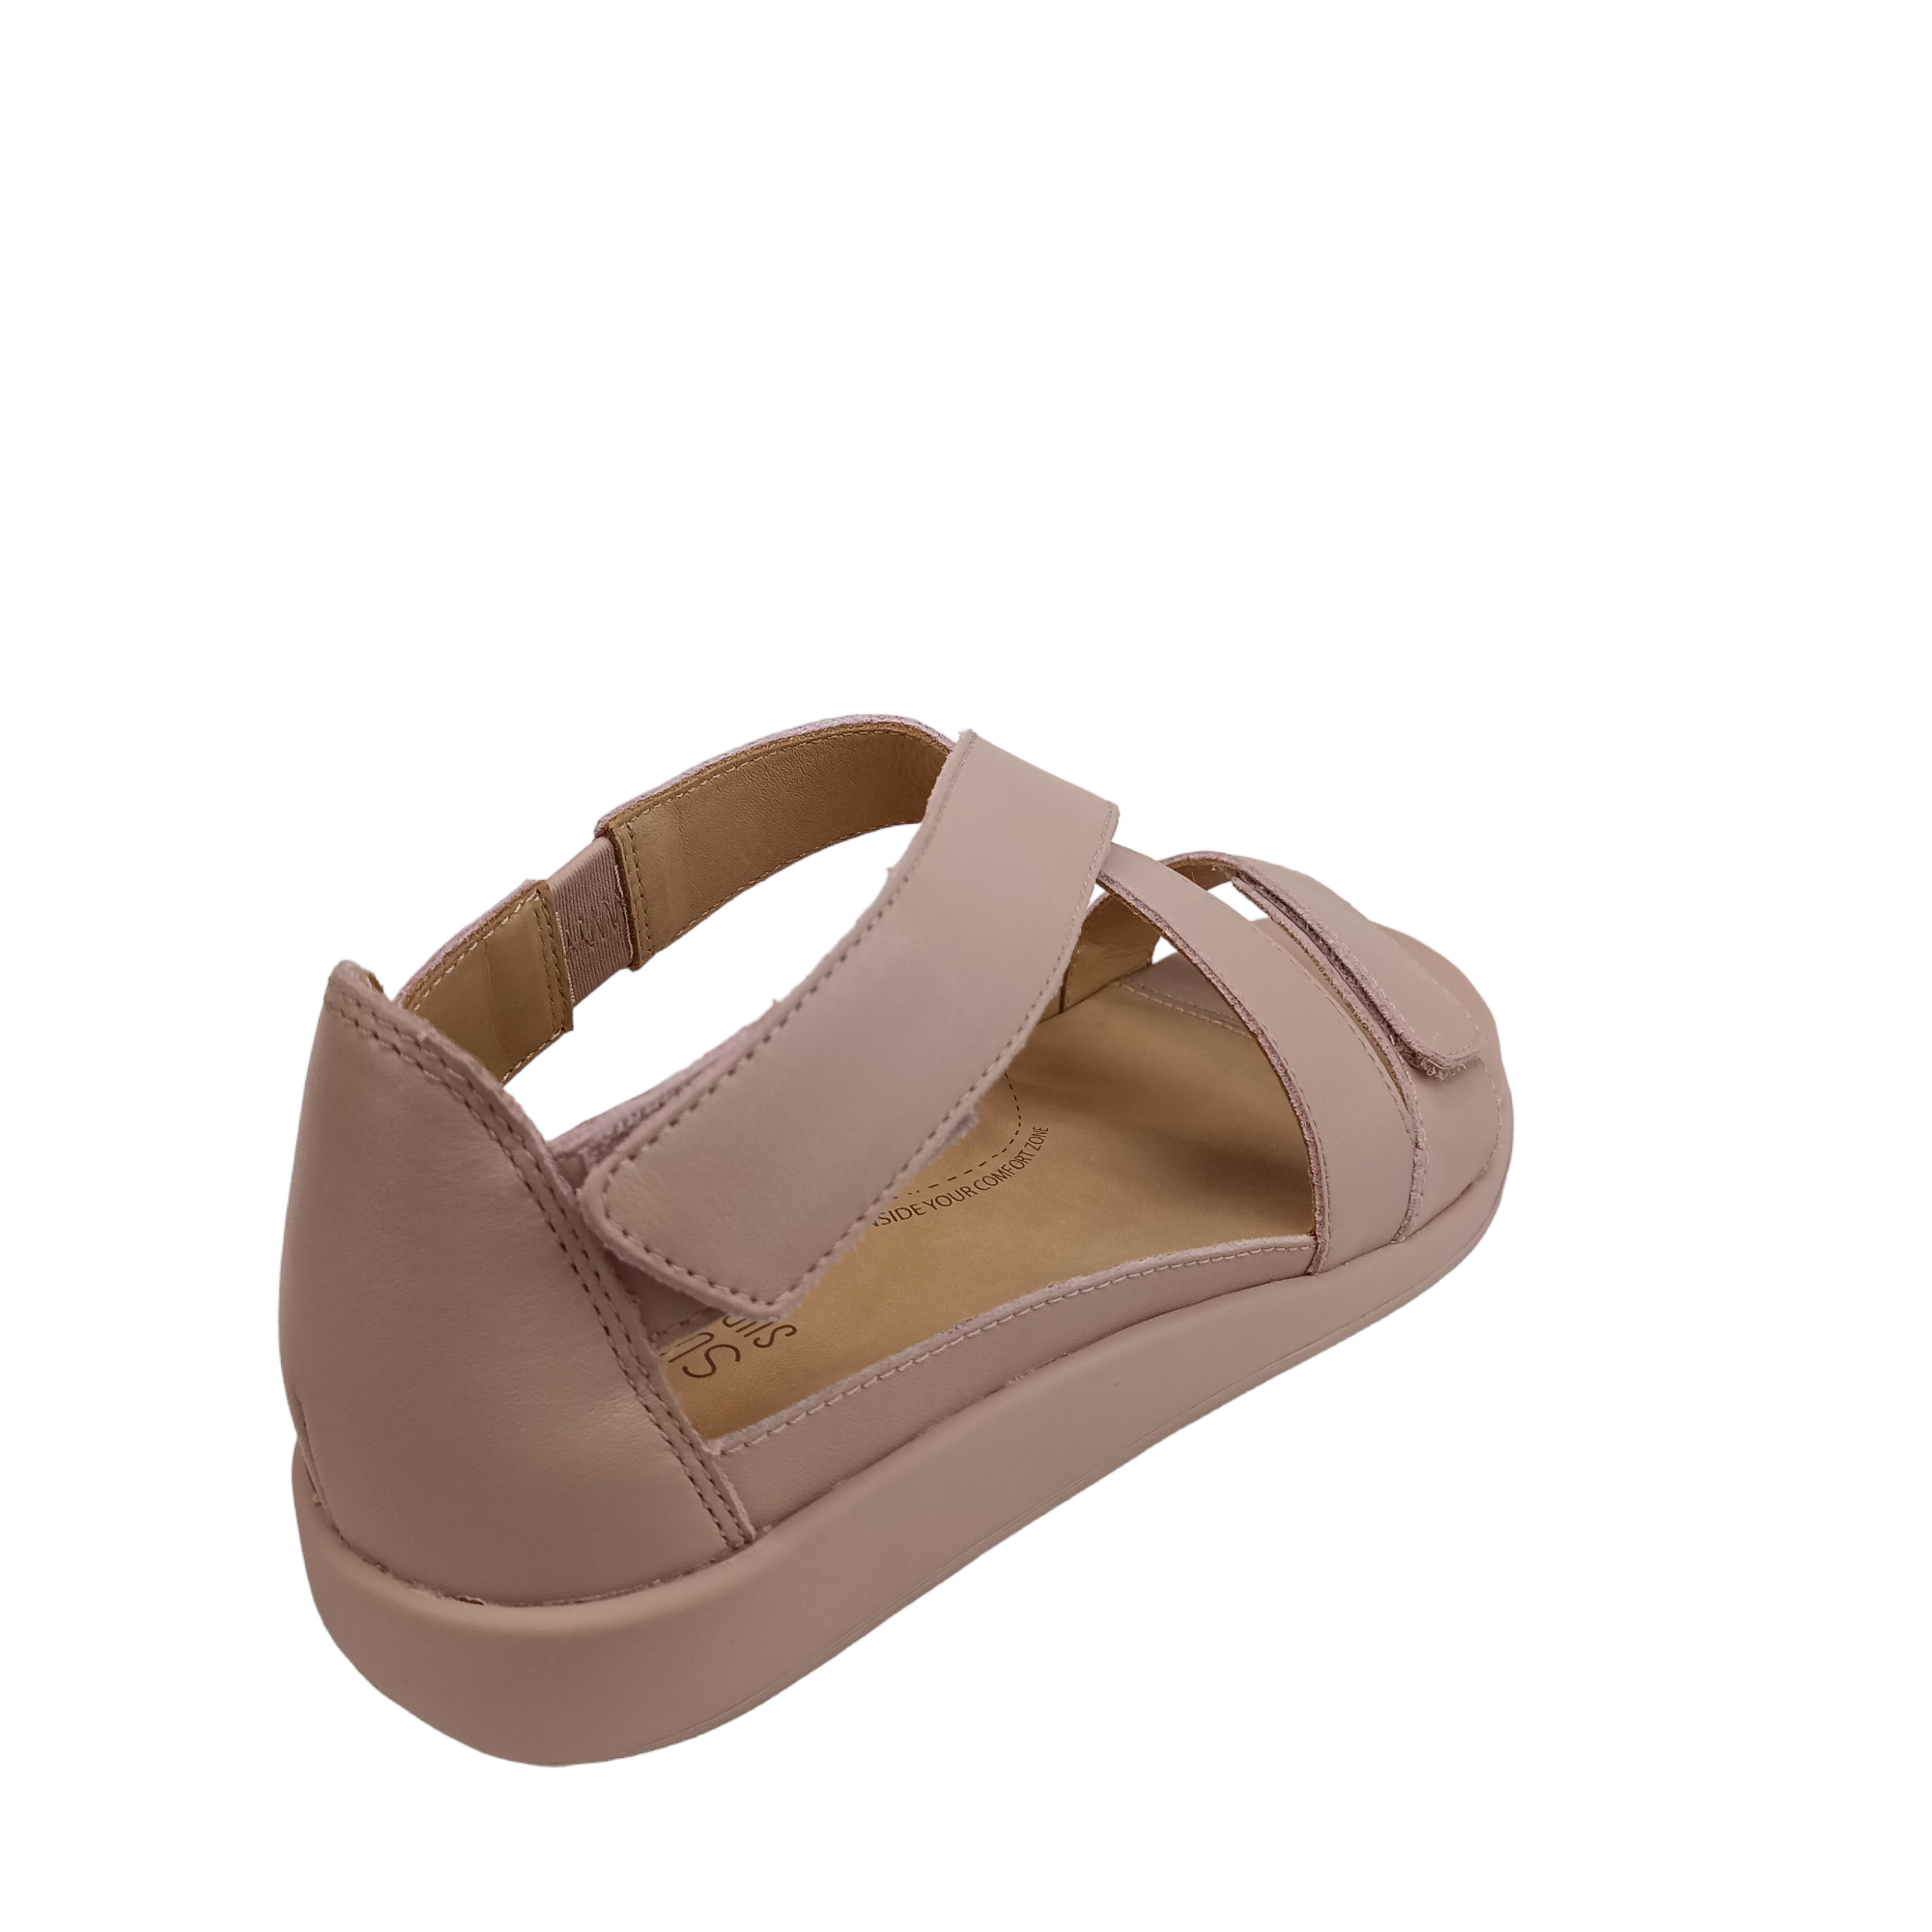 Issy - shoe&me - Ziera - Sandal - Sandal, Summer, Womens